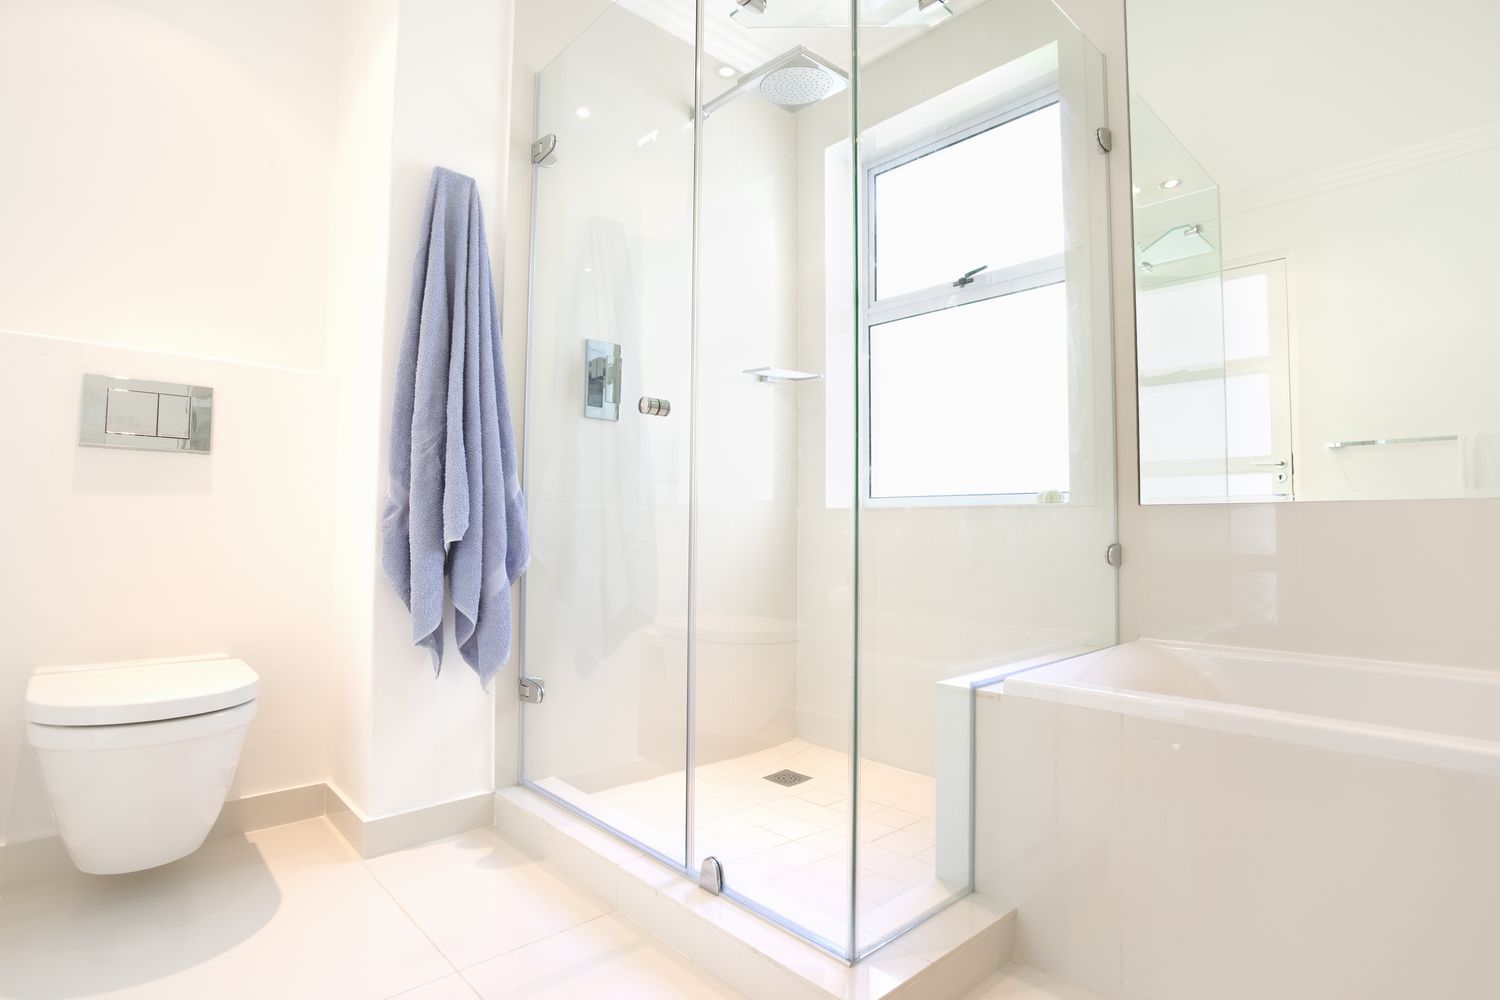 Baño doméstico moderno con ventana en la ducha